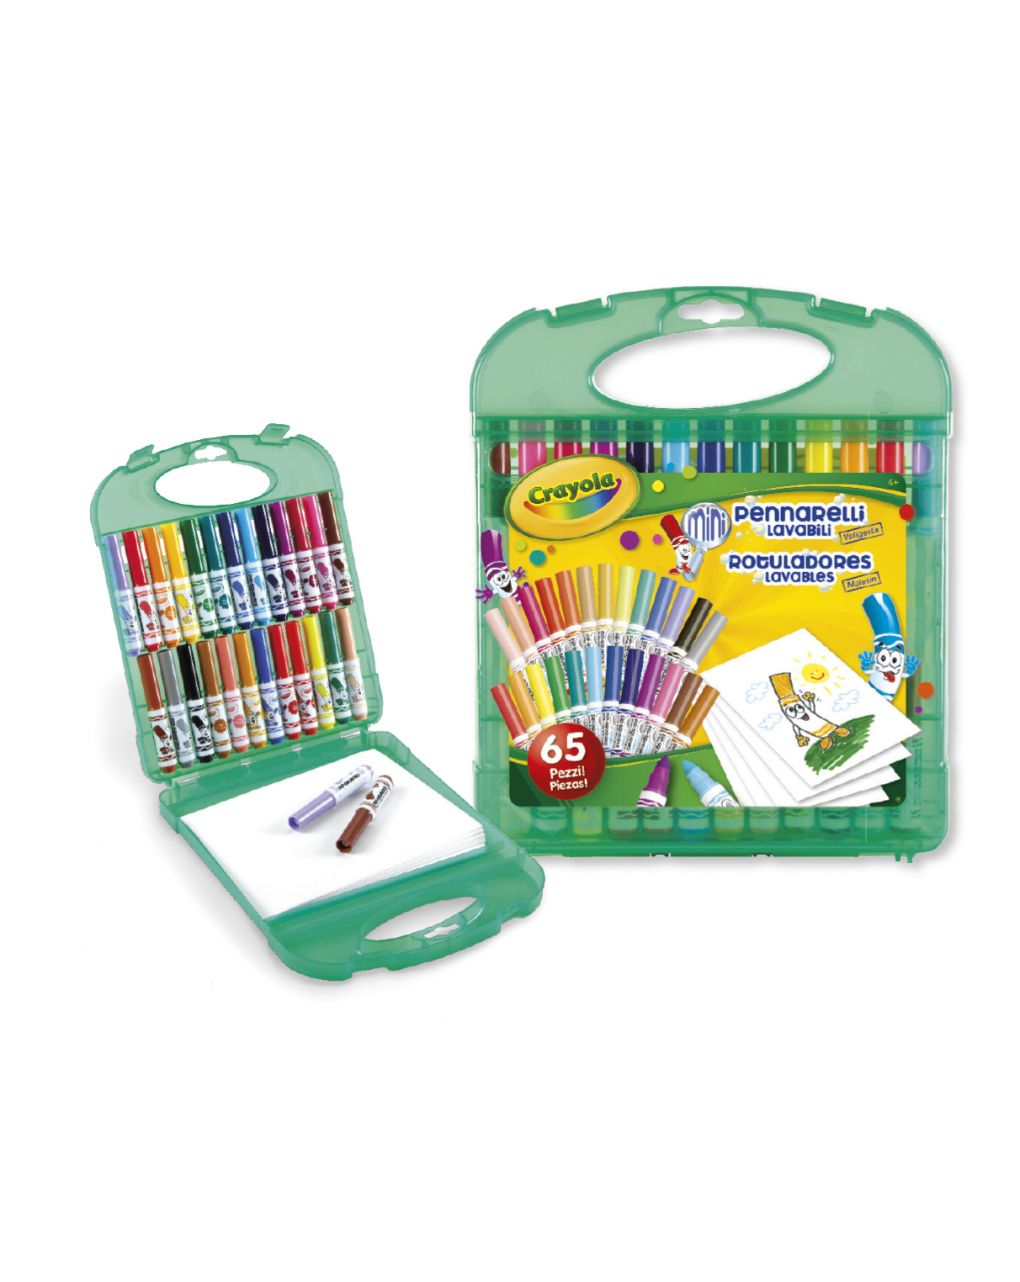 Crayola - conjunto de marcadores laváveis - Crayola